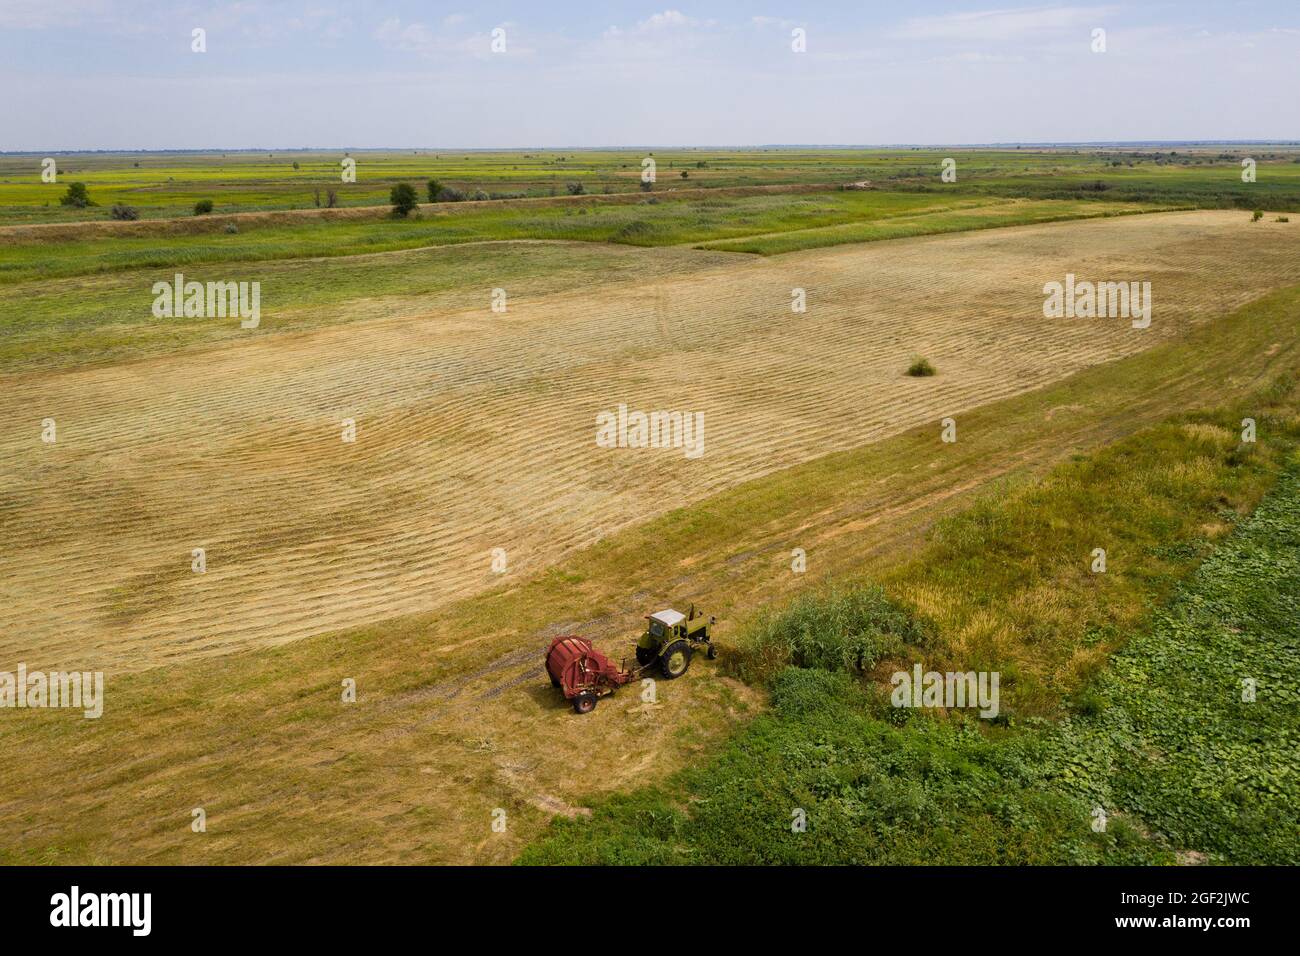 Tracteur pour la fabrication de balles de paille sur le champ de blé récolté. Vue aérienne Banque D'Images